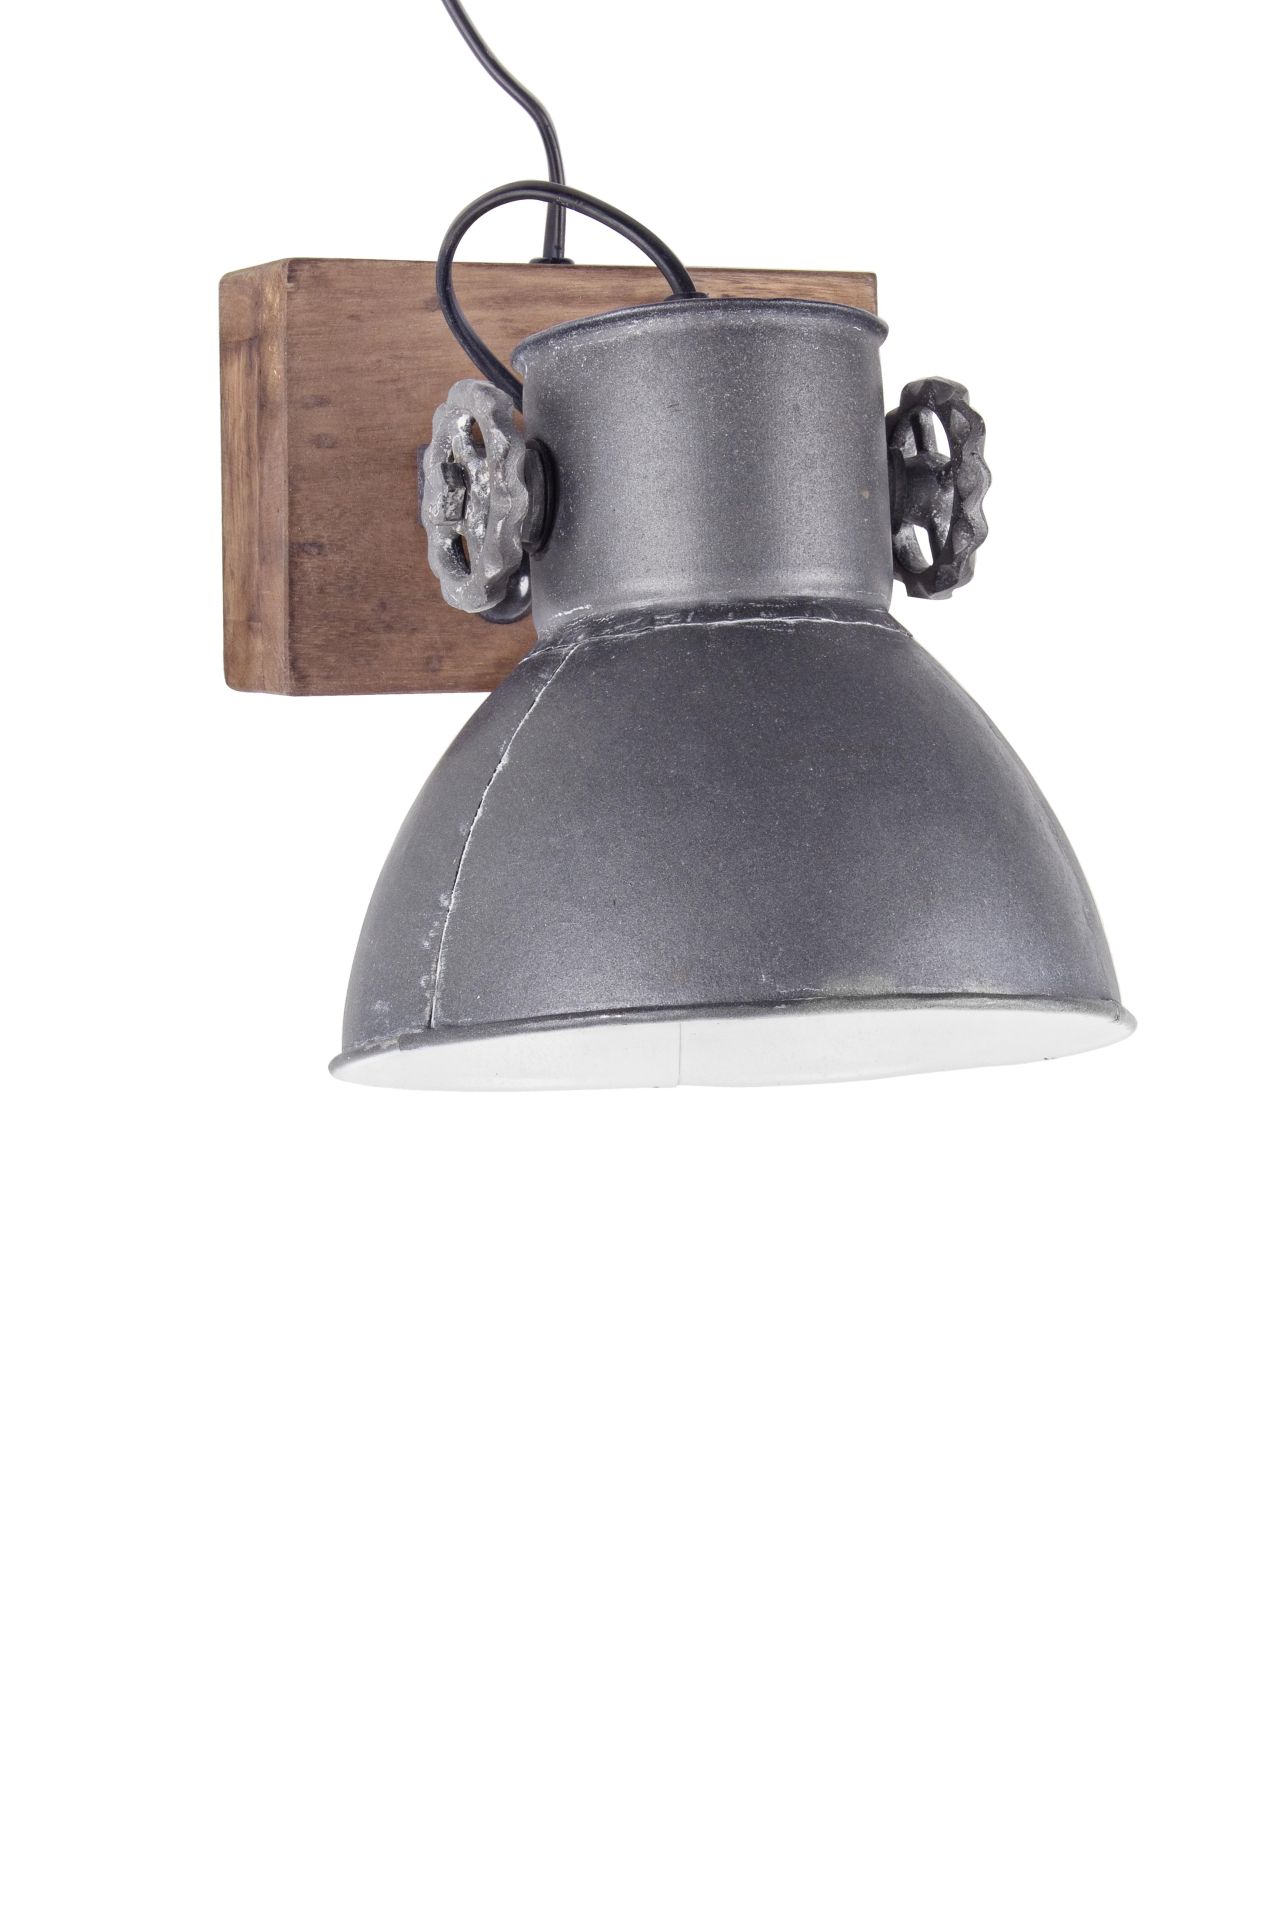 Die Wandleuchte Appllique überzeugt mit ihrem klassischen Design. Gefertigt wurde sie aus Mangoholz, welches einen natürlichen Farbton besitzt. Der Lampenschirm ist aus Metall und hat eine graue Farbe. Die Lampe besitzt eine Höhe von 27 cm.